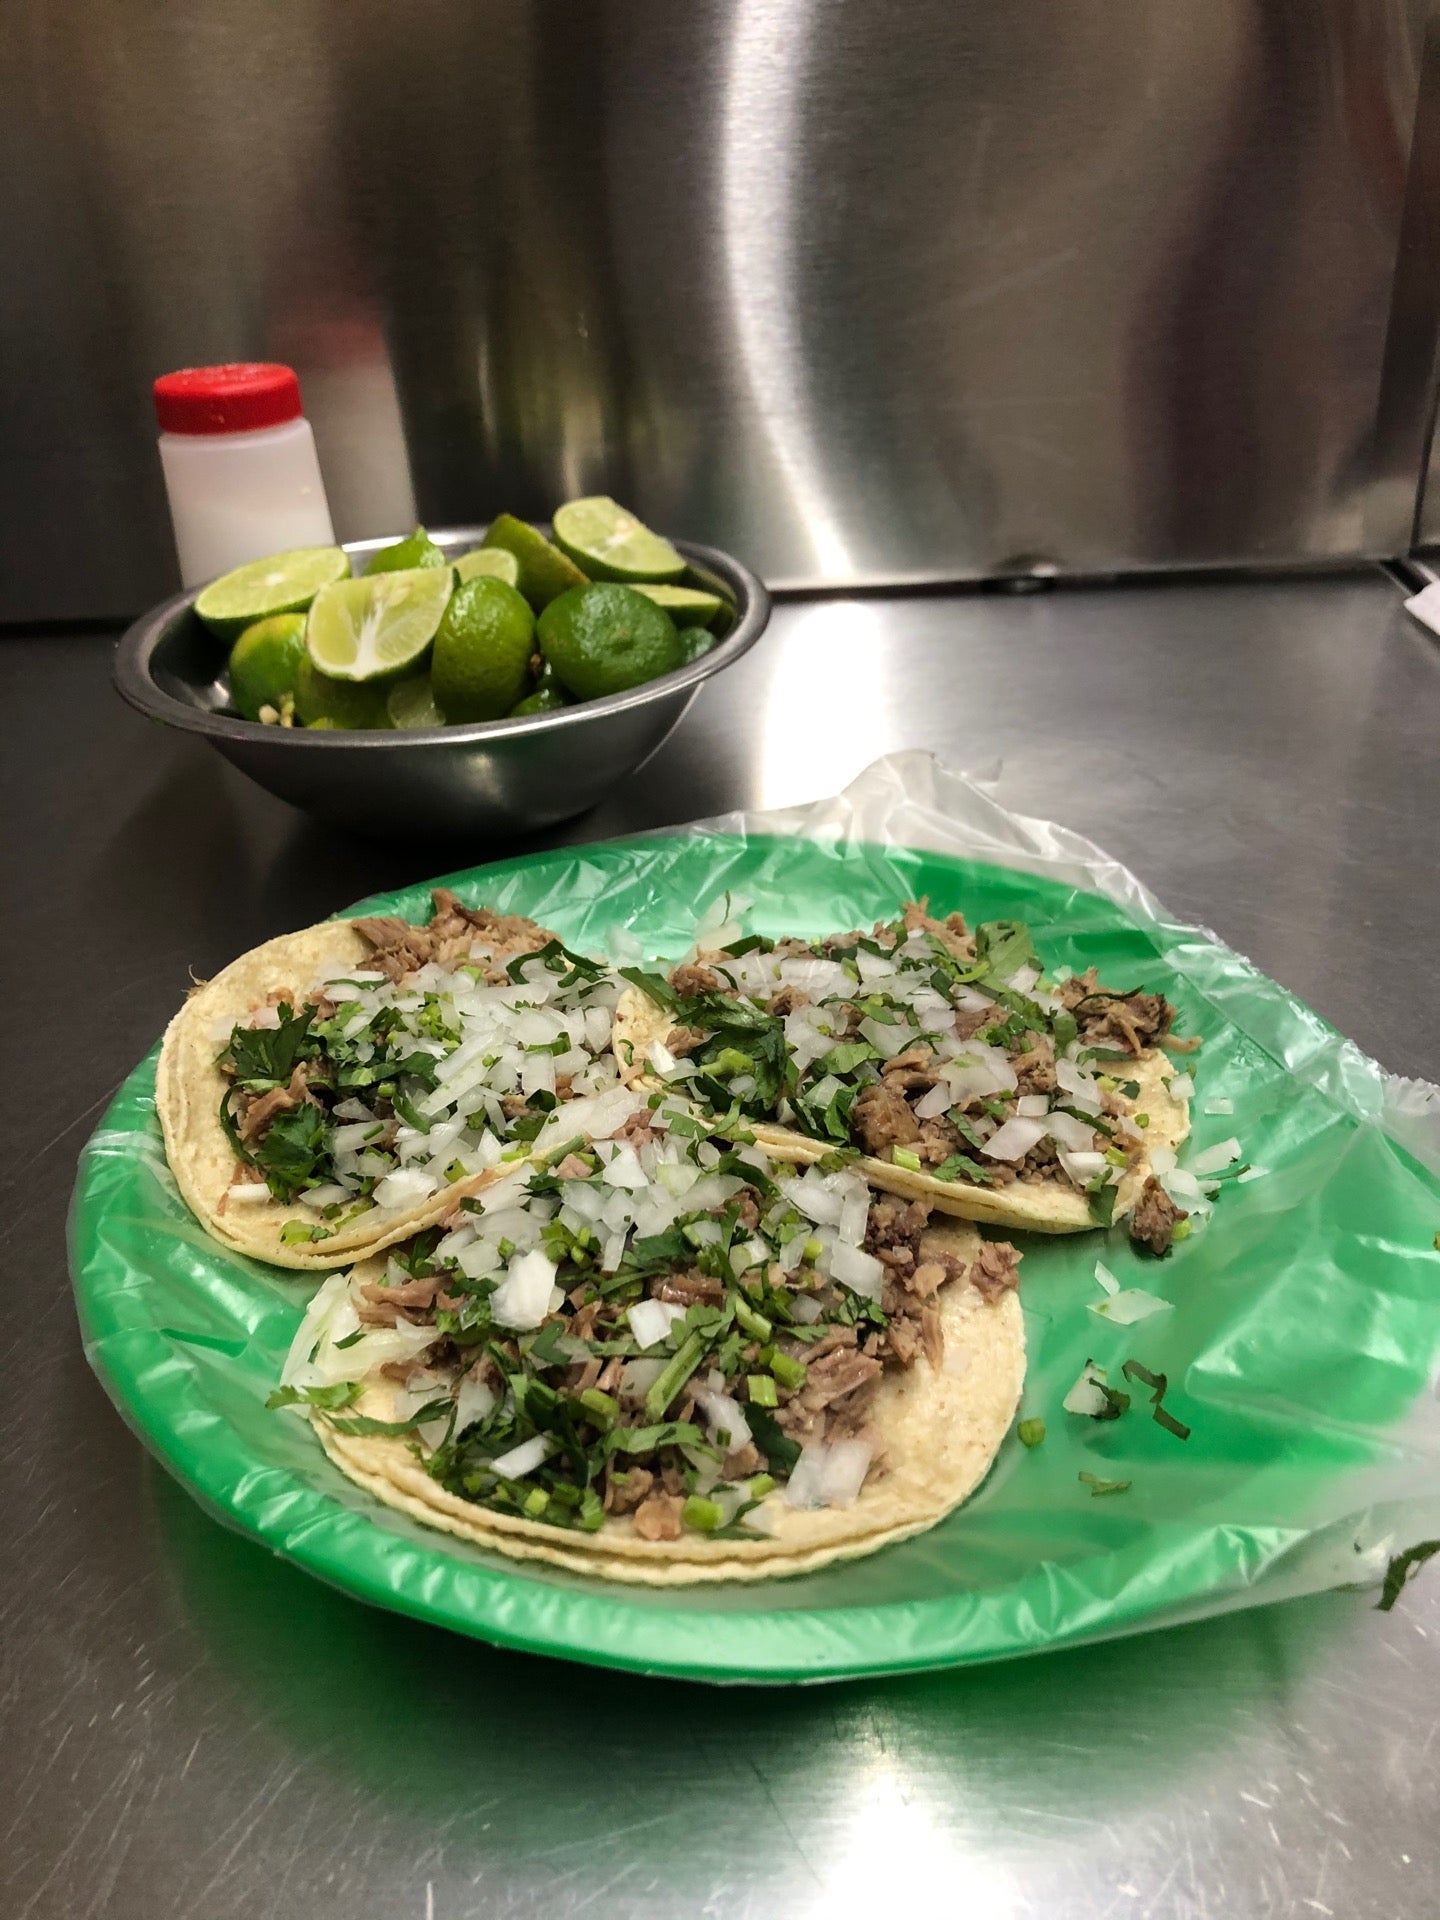 Tacos "El guero" de Santa Fe